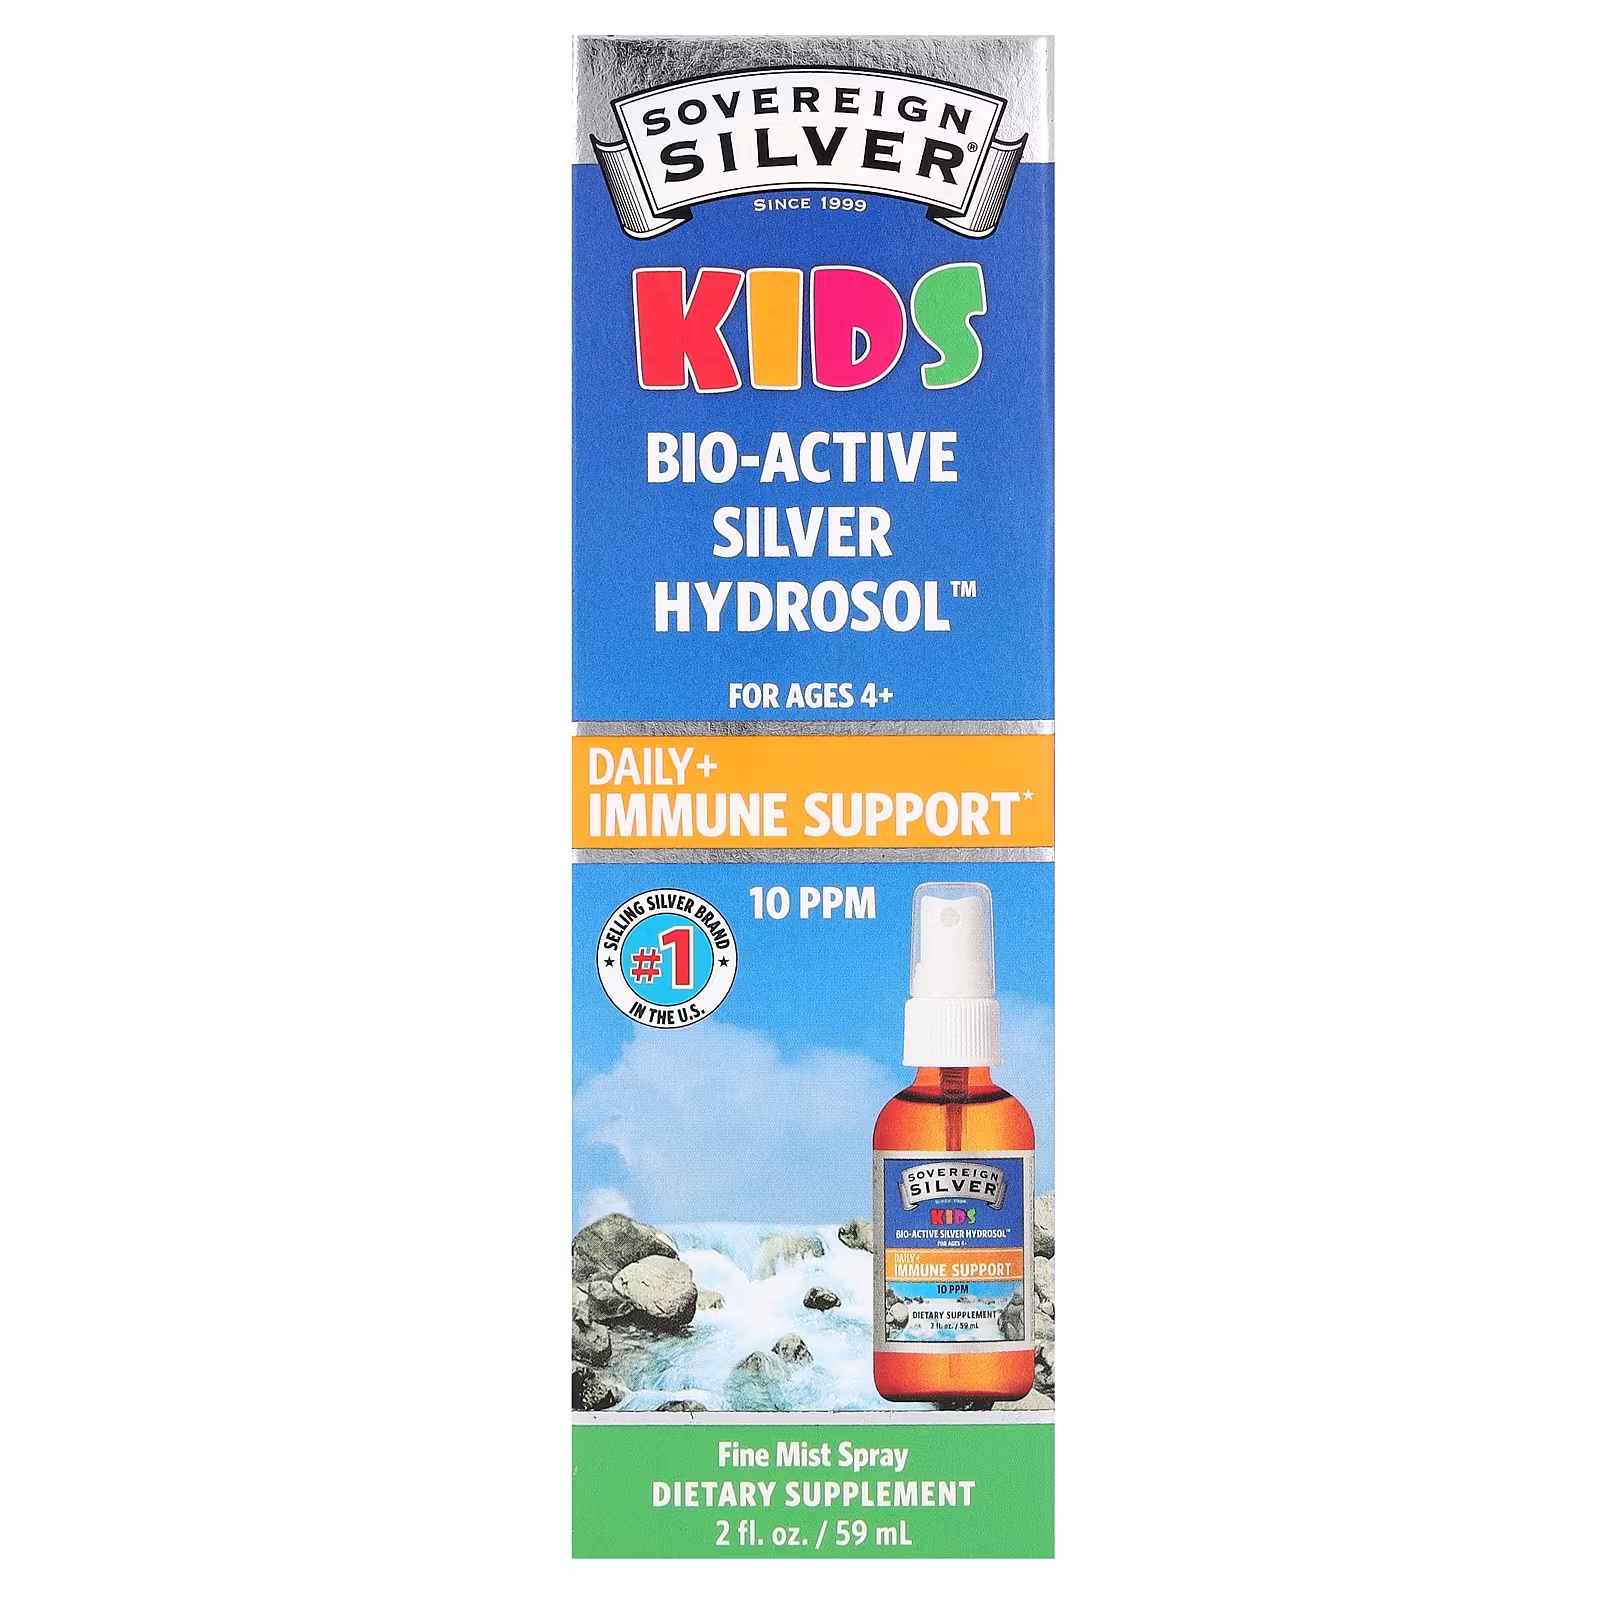 Sovereign Silver Kids Биоактивный гидрозоль серебра для ежедневного использования + спрей для поддержки иммунитета для детей от 4 лет 12 мкг 2 жидких унции (59 мл) (10 частей на миллион на 1,2 мл) sovereign silver биоактивный гидрозоль серебра для детей ежедневный спрей для иммунной поддержки для детей от 4 лет 10 част млн 59 мл 2 жидк унции